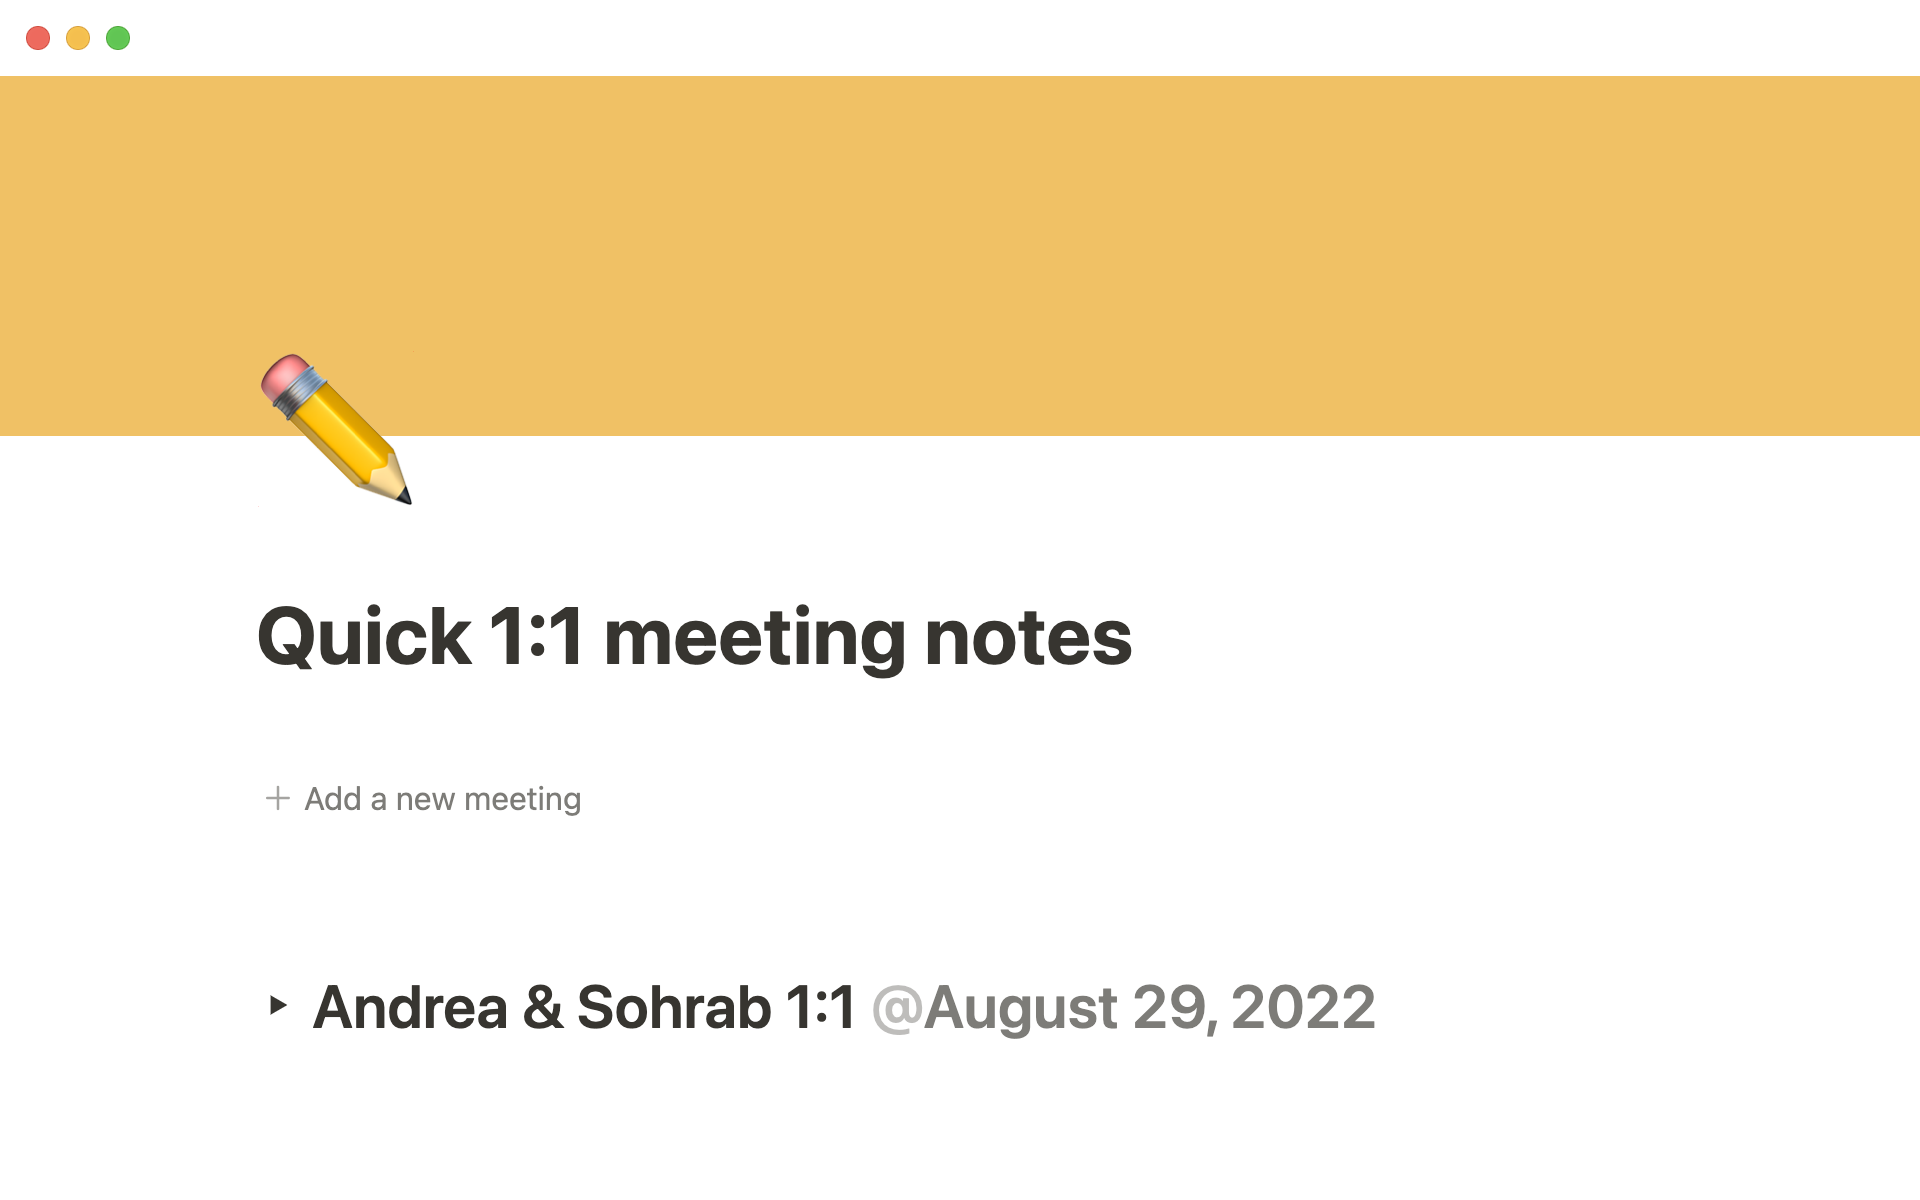 Vista previa de una plantilla para Quick 1:1 meeting notes